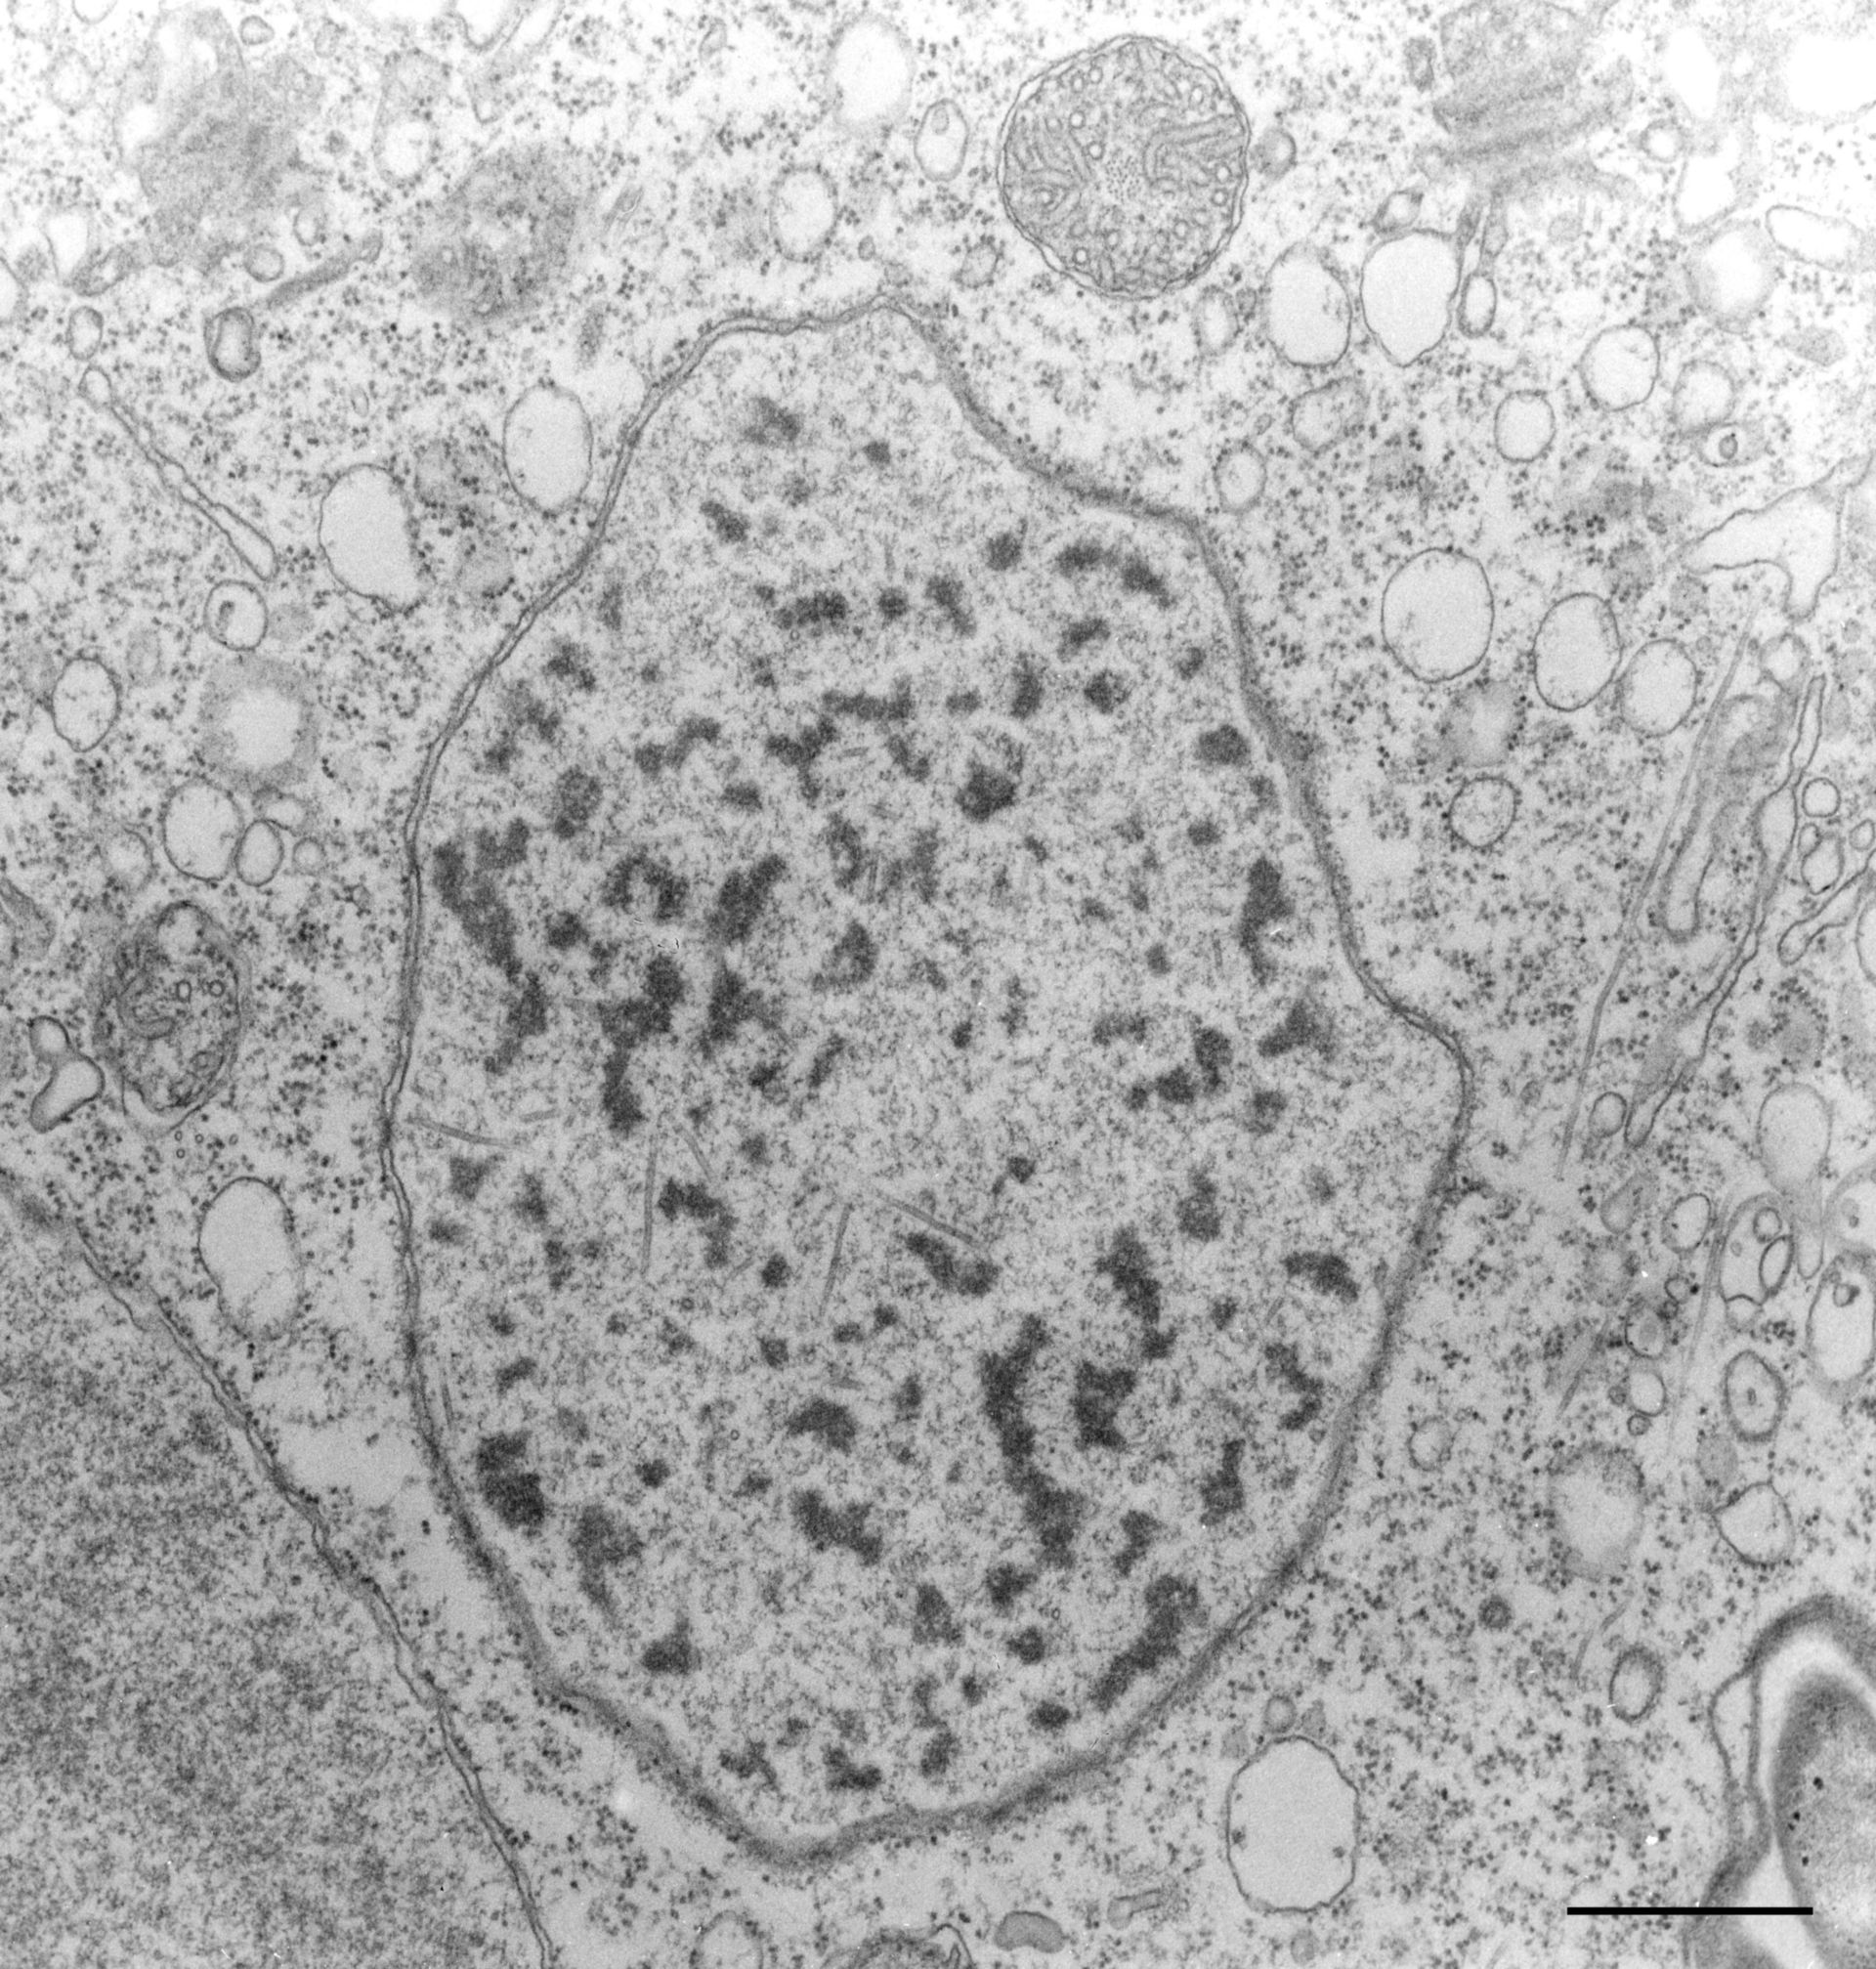 Vorticella convallaria (Heterochromatin) - CIL:36260